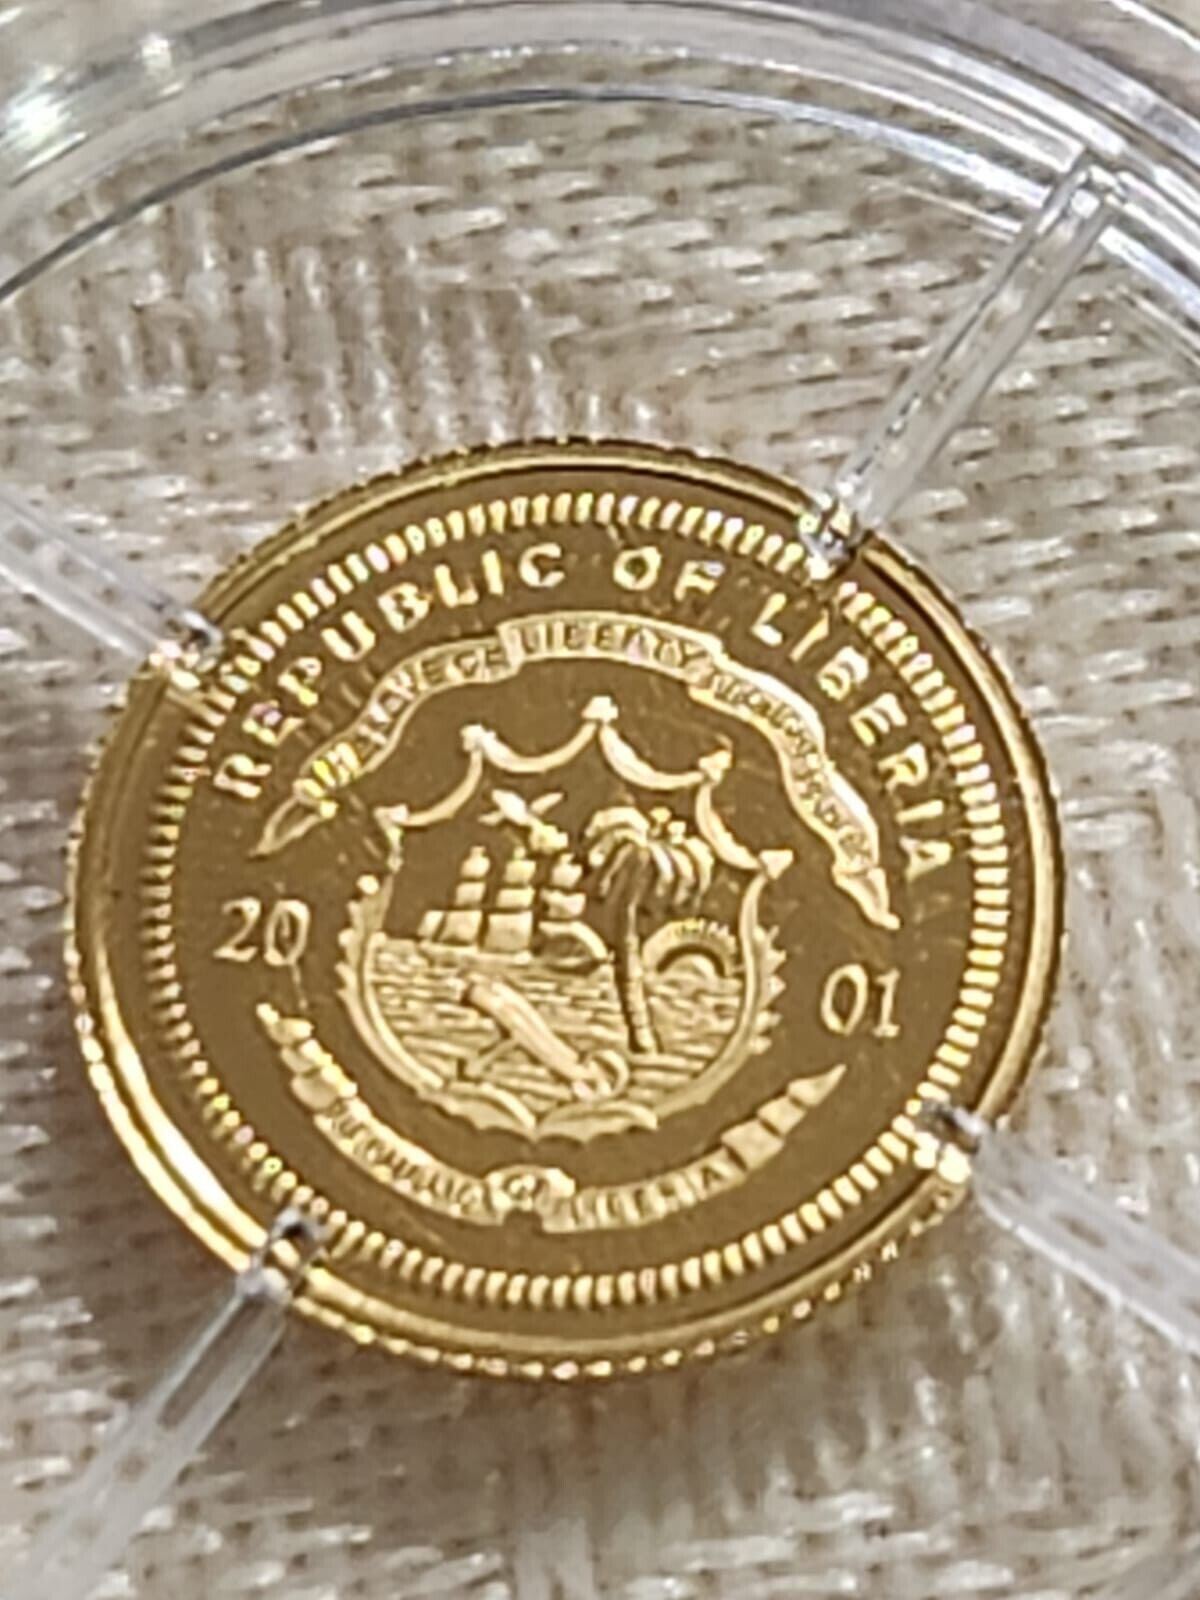 Liberia 2001 $25 Smallest Gold Mini Coin Proof-"Galileo Galile"est $75+.CB8a